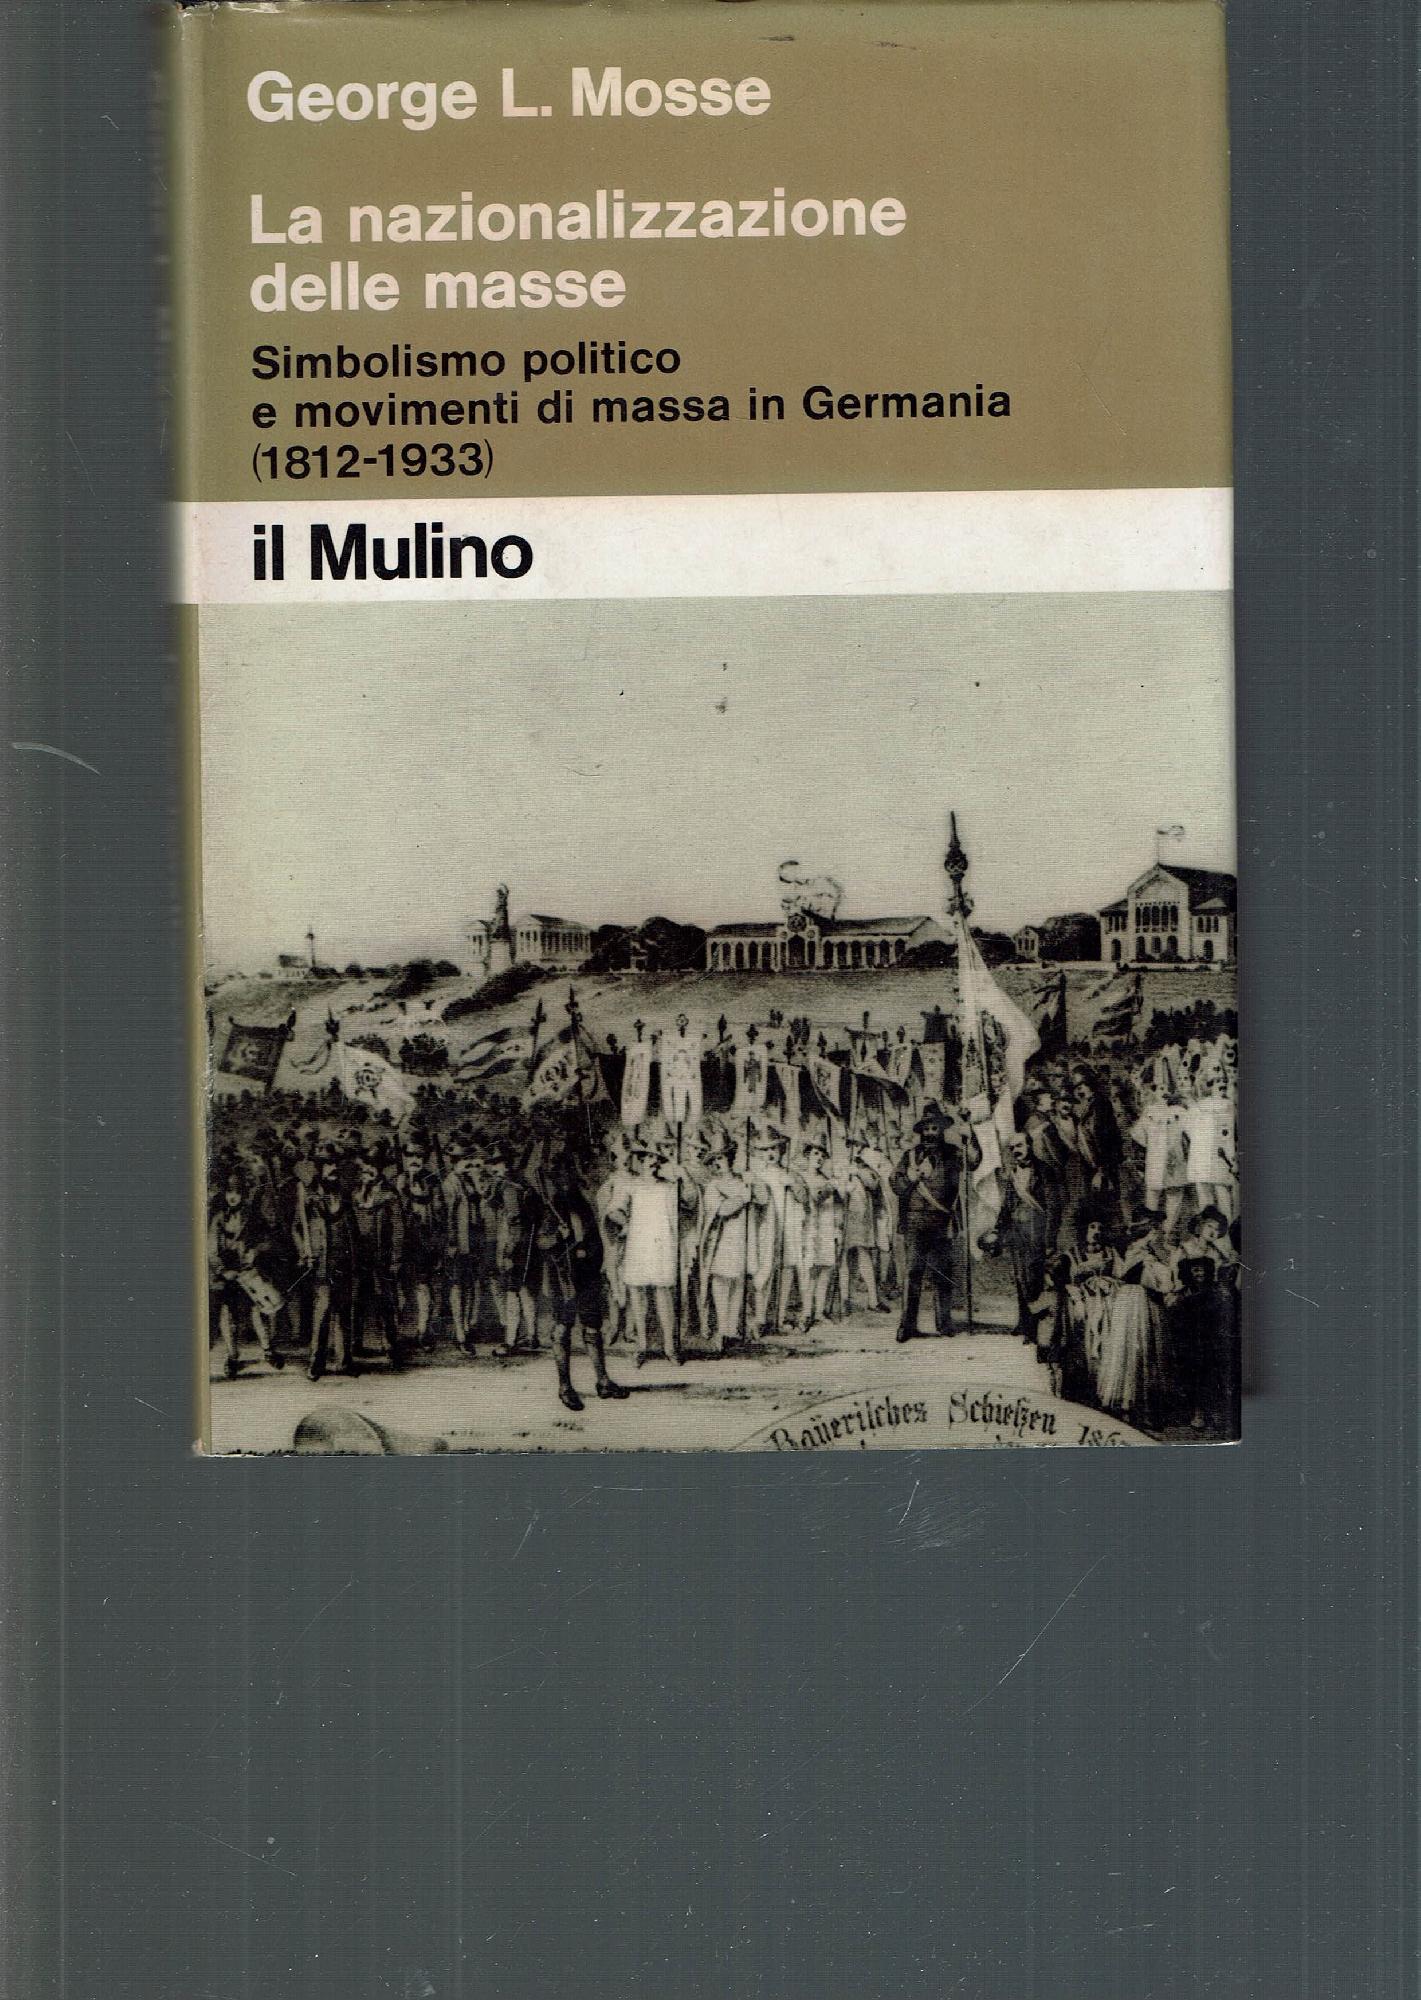 LA NAZIONALIZZAZIONE DELLE MASSE SIMBOLISMO POLITICO E MOVIMENTI FI MASSA IN GERMANIA (1812-1933) - G. L. MOSSE]